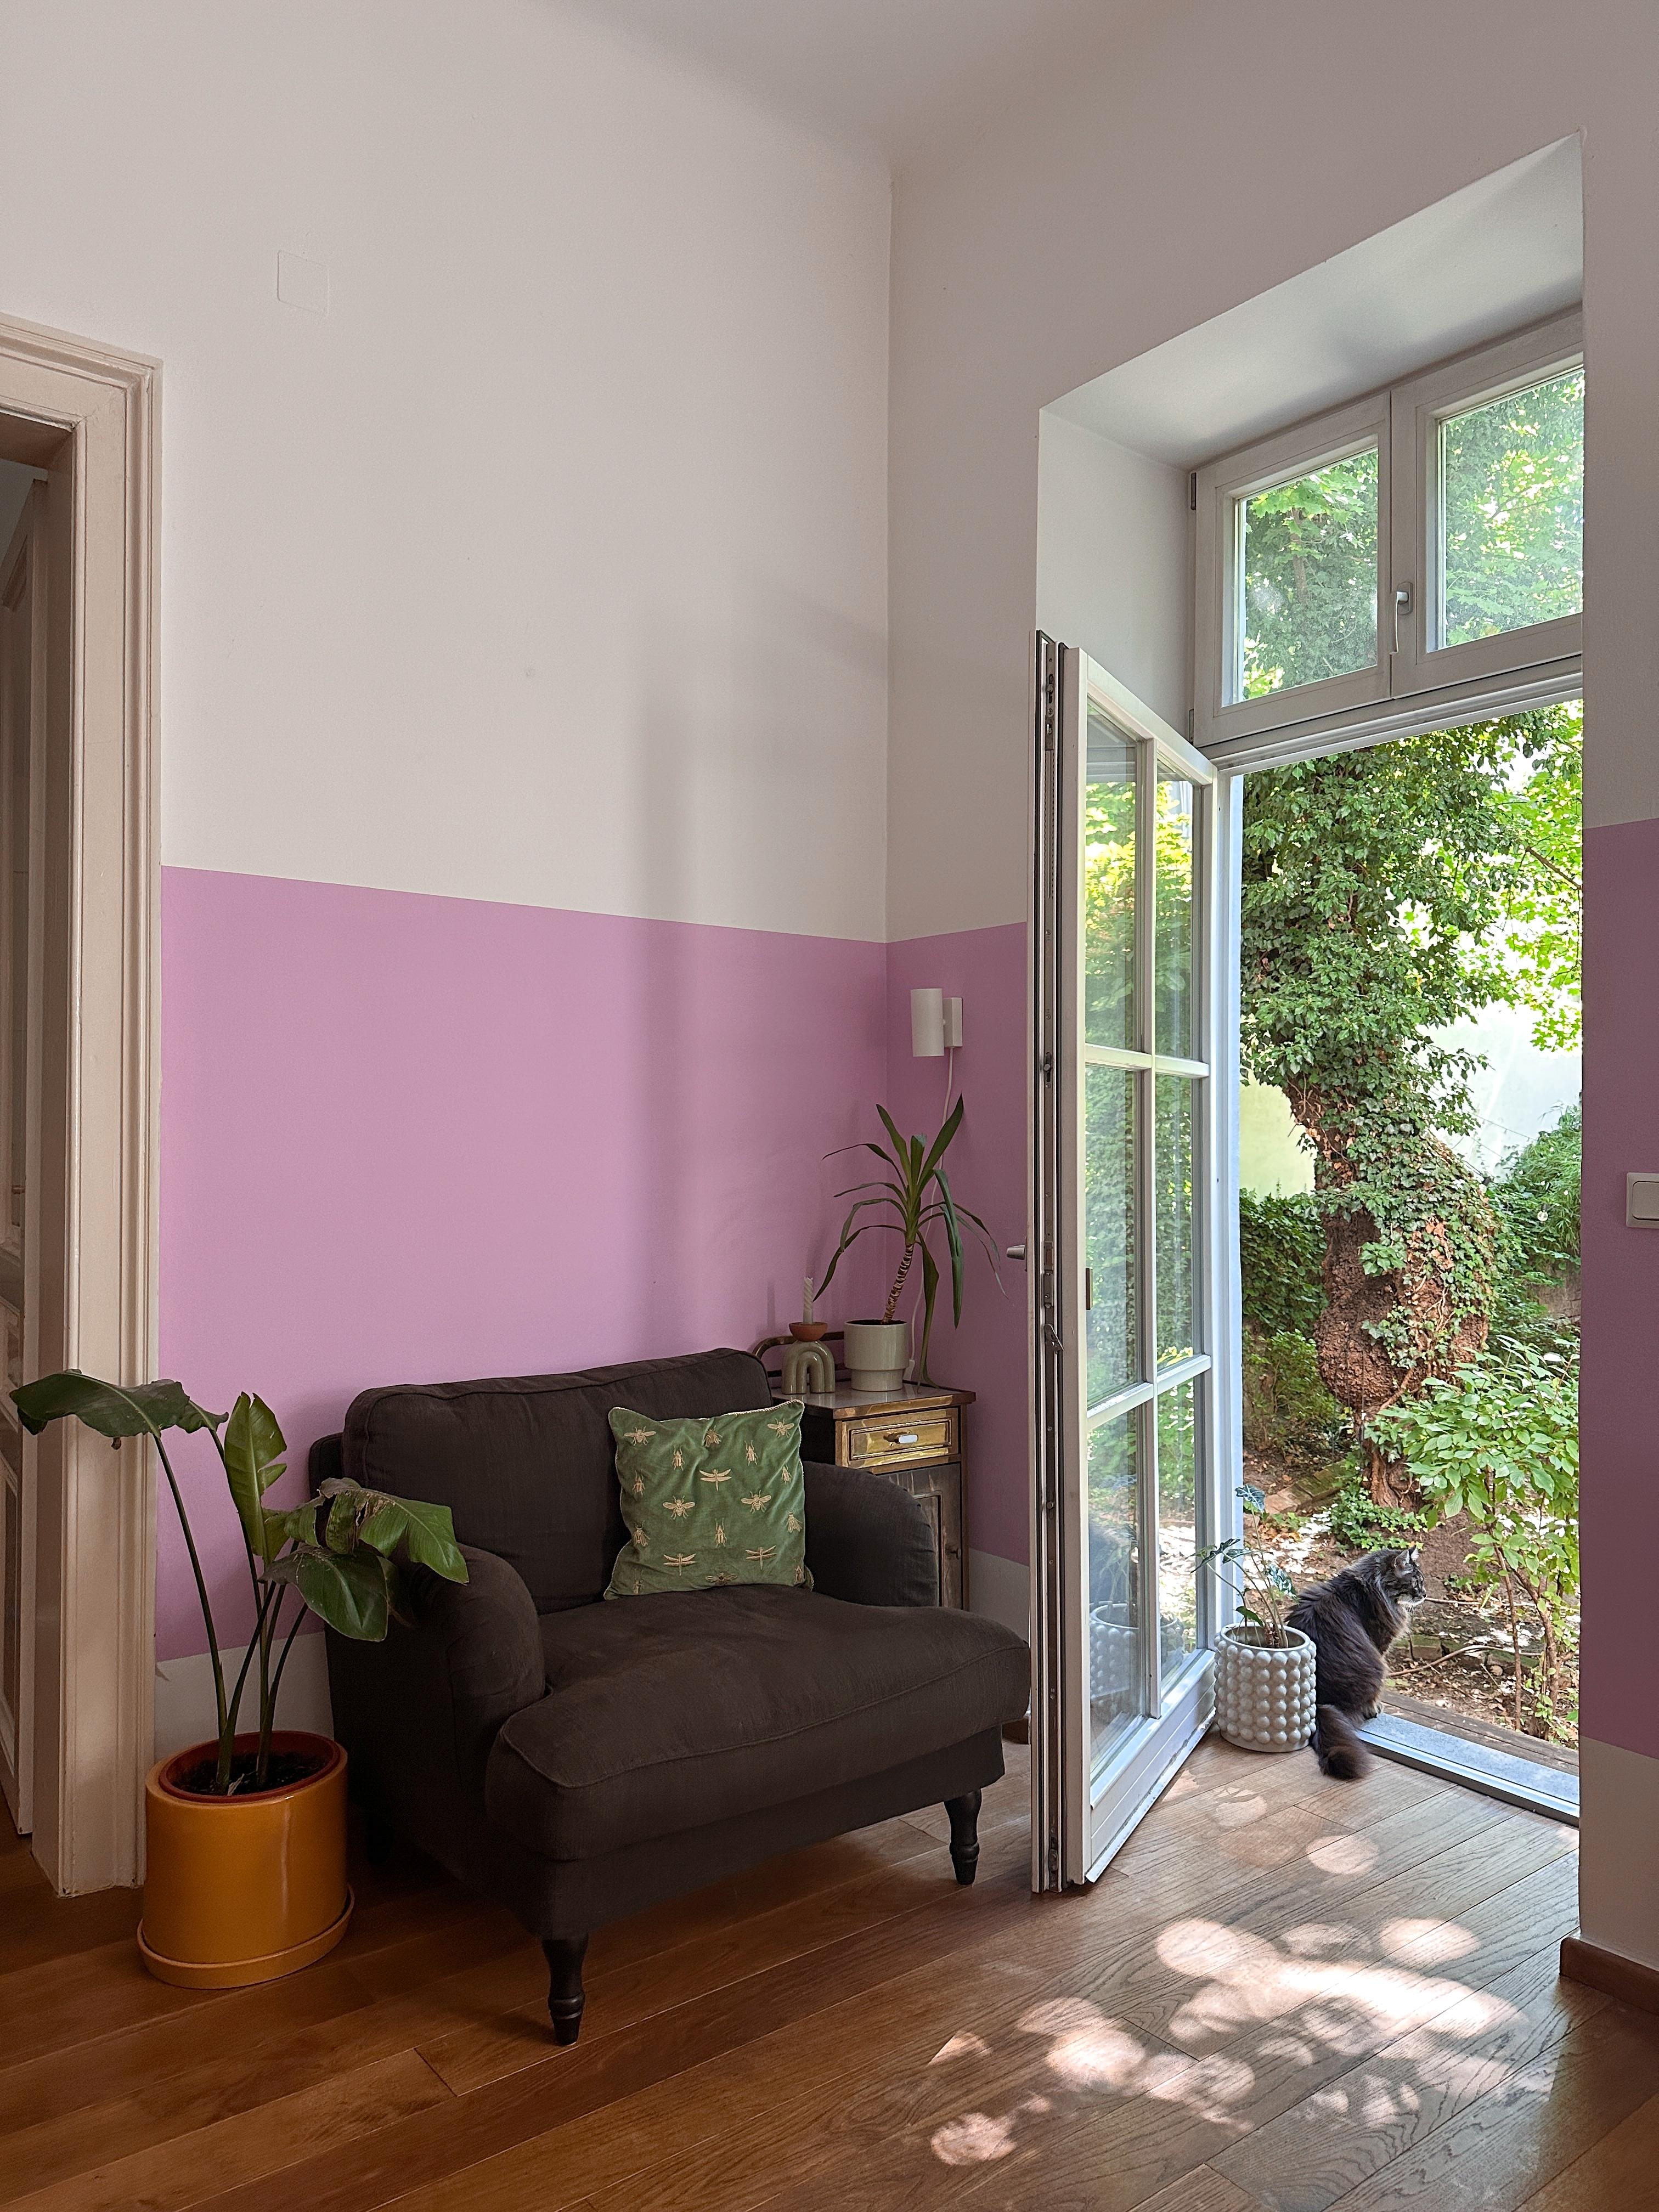 Ich liebe unsre neue Wandfarbe 💜😊

#lila #grün #farbenfroh #bunt #altbau #wohnzimmer #garten #vintage #individuell #sessel #kissen #gold #sonne #parkett #wandfarbe